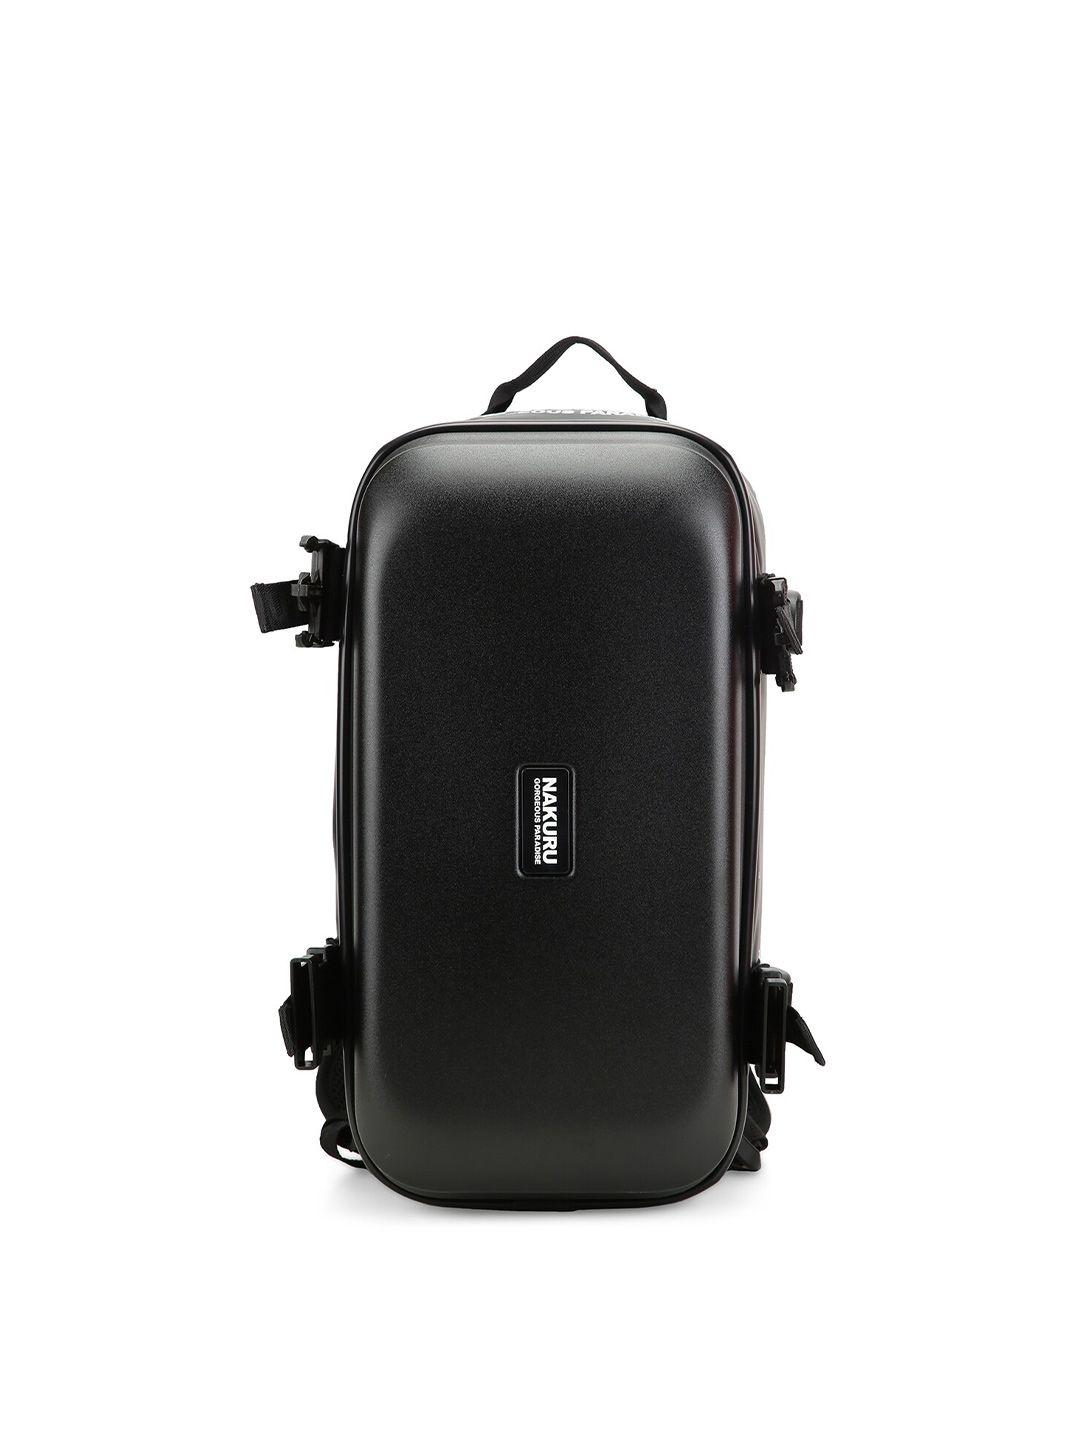 nakuru ae-6002 range soft case one size backpack